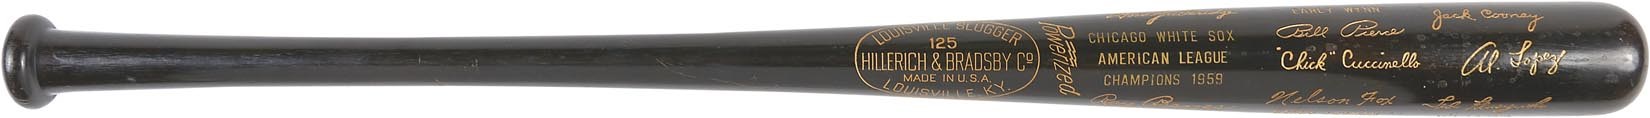 Baseball Equipment - Nellie Fox's 1959 Chicago White Sox Black Bat (Fox Family Letter)